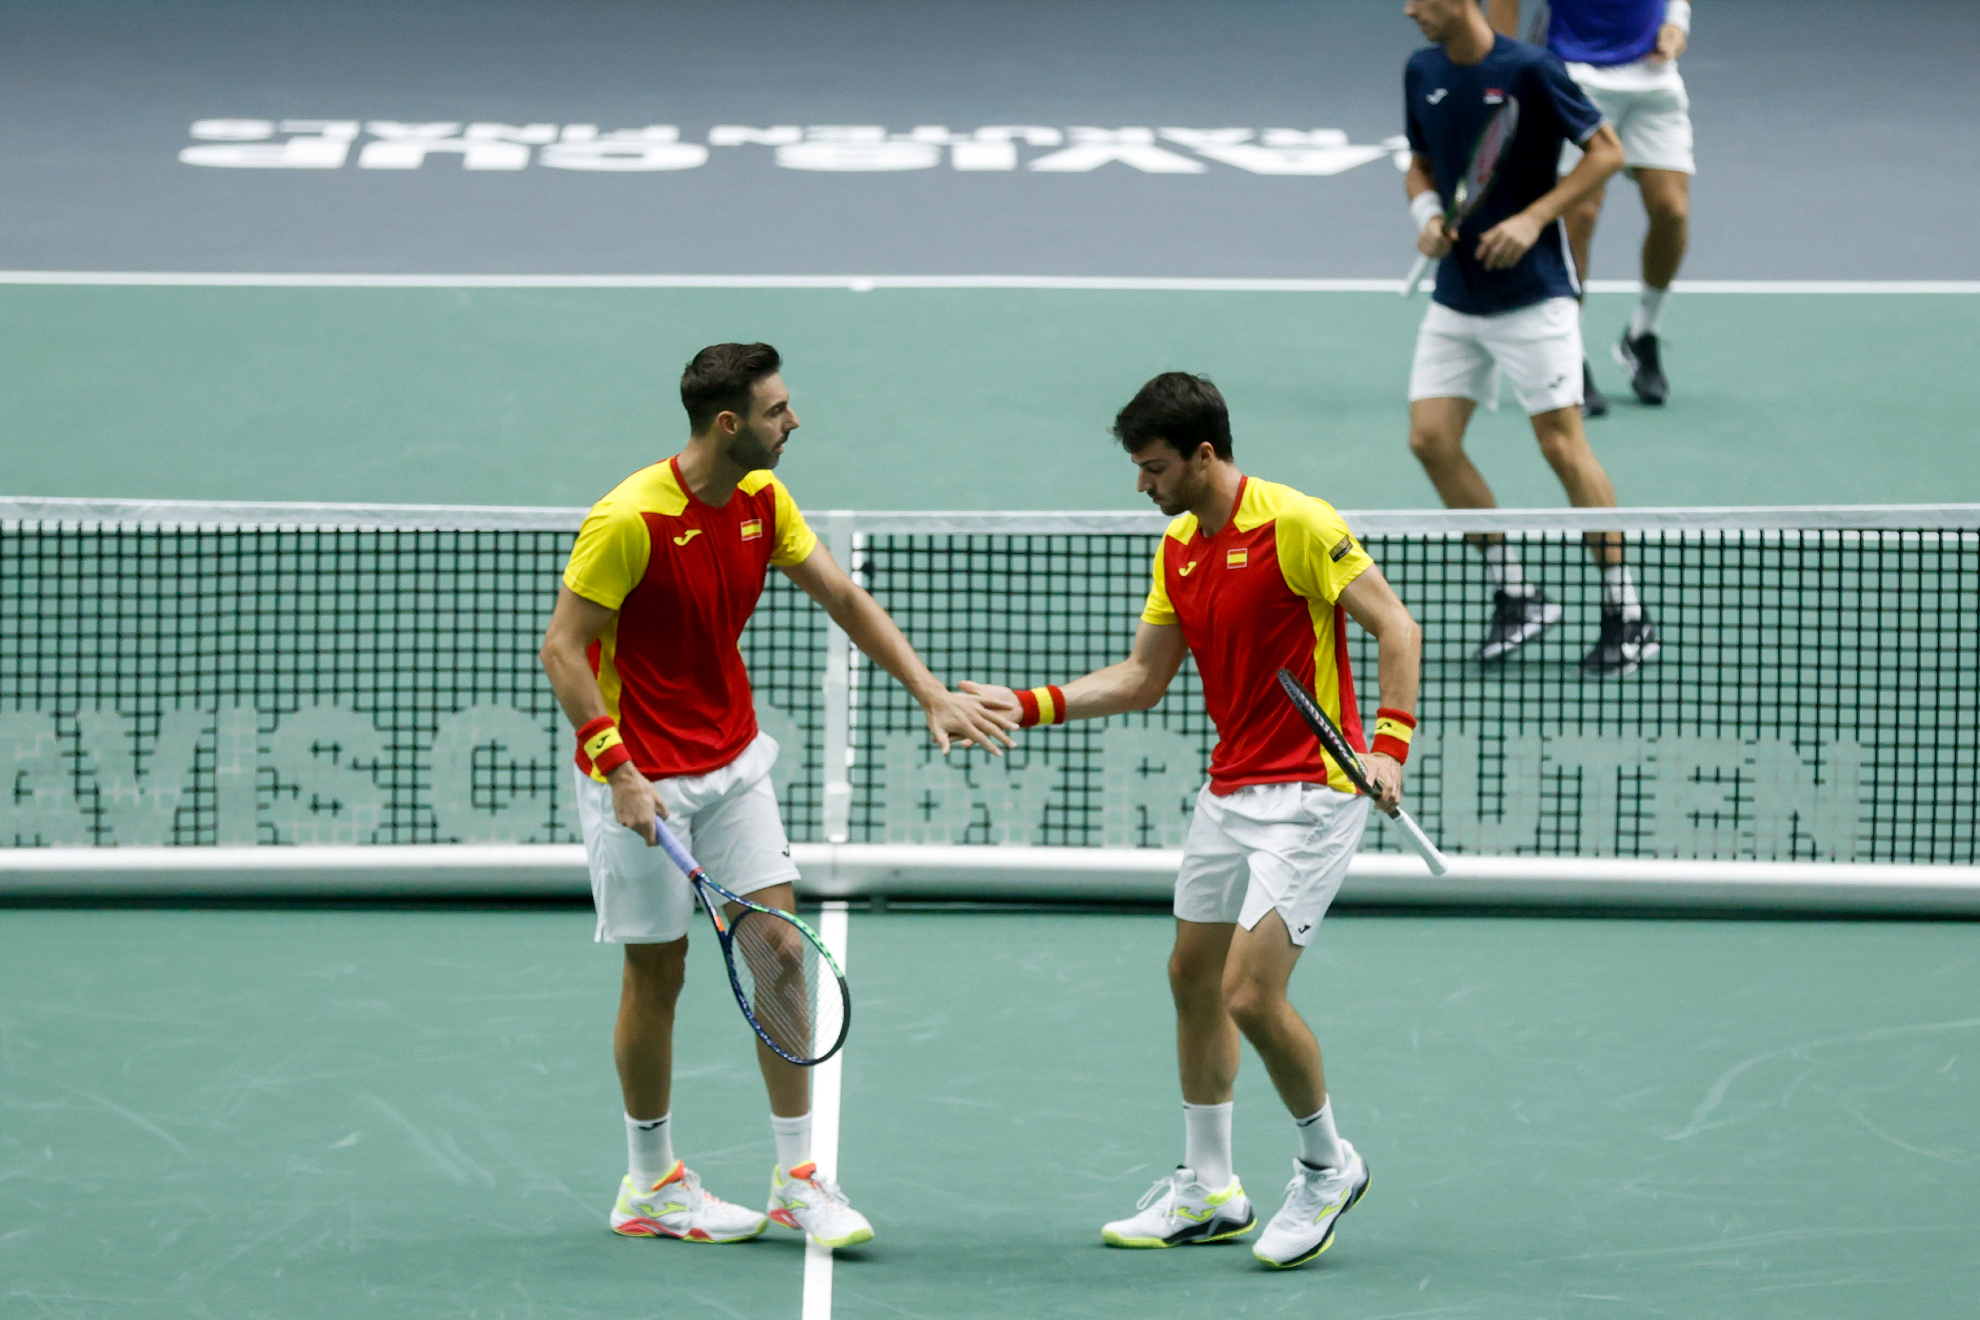 España - Canadá en Copa Davis | Resumen y resultado